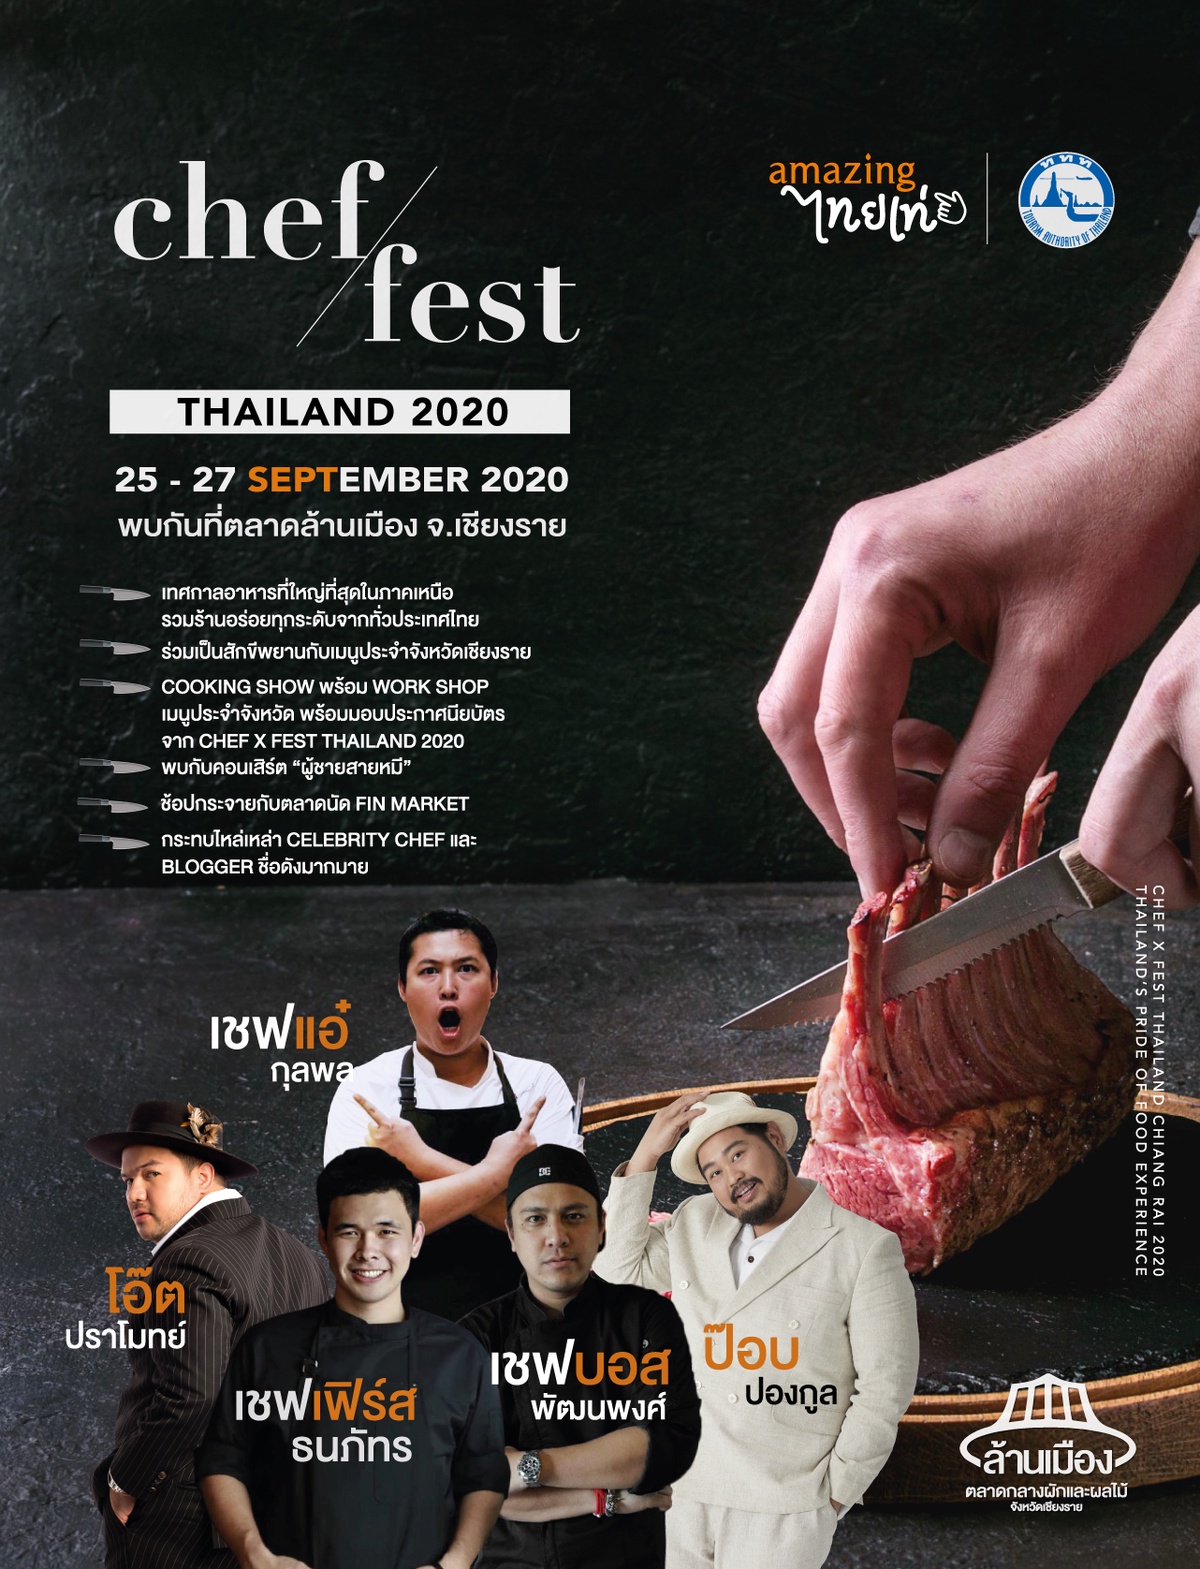 เทศกาลอาหาร พร้อมกิจกรรมสุดพิเศษ กับงาน Chef/Fest Thailand 2020 วันที่ 25-27 กันยายน 2563 ณ ตลาดล้านเมือง จ.เชียงราย สนับสนุนการจัดงานโดย